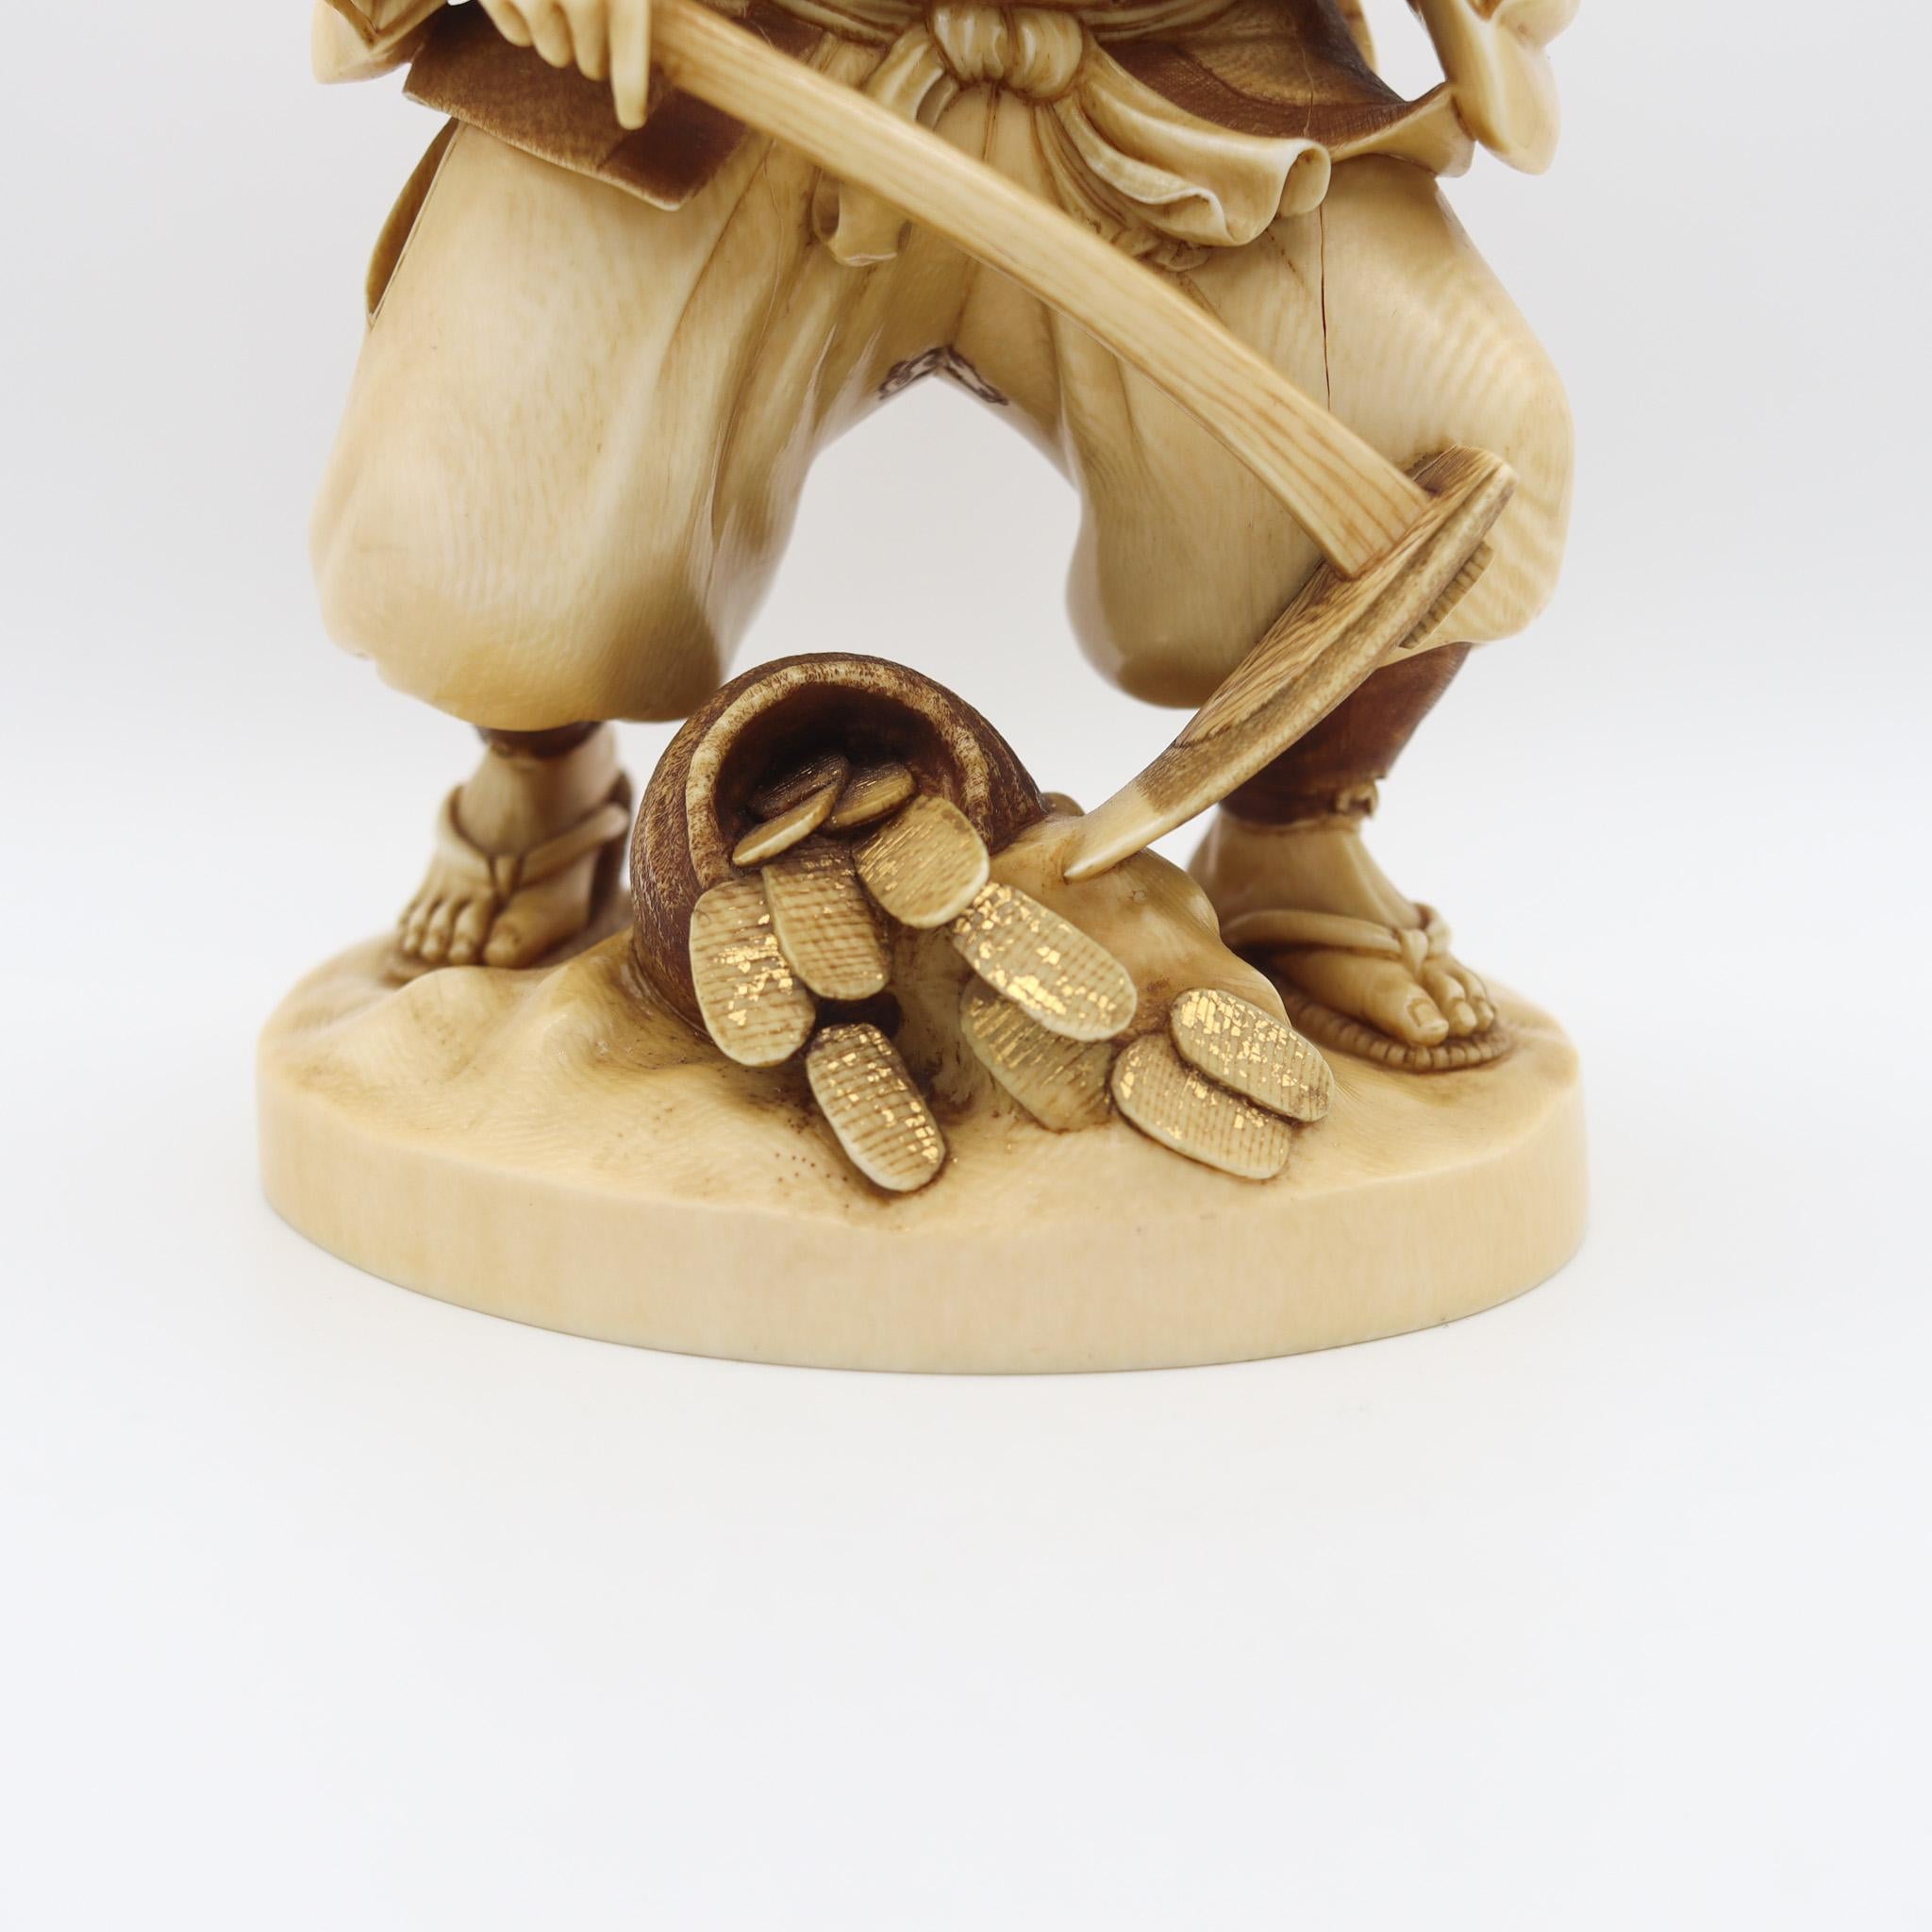 Eine japanische geschnitzte Skulptur von Daikoku.

Prächtige Skulptur des Glücksgottes Daikoku, geschaffen in Japan während der Meiji-Zeit, um 1890. Die Schnitzerei zeigt den japanischen Glücksgott Daikoku in Gestalt eines Bauern, der eine Hacke in